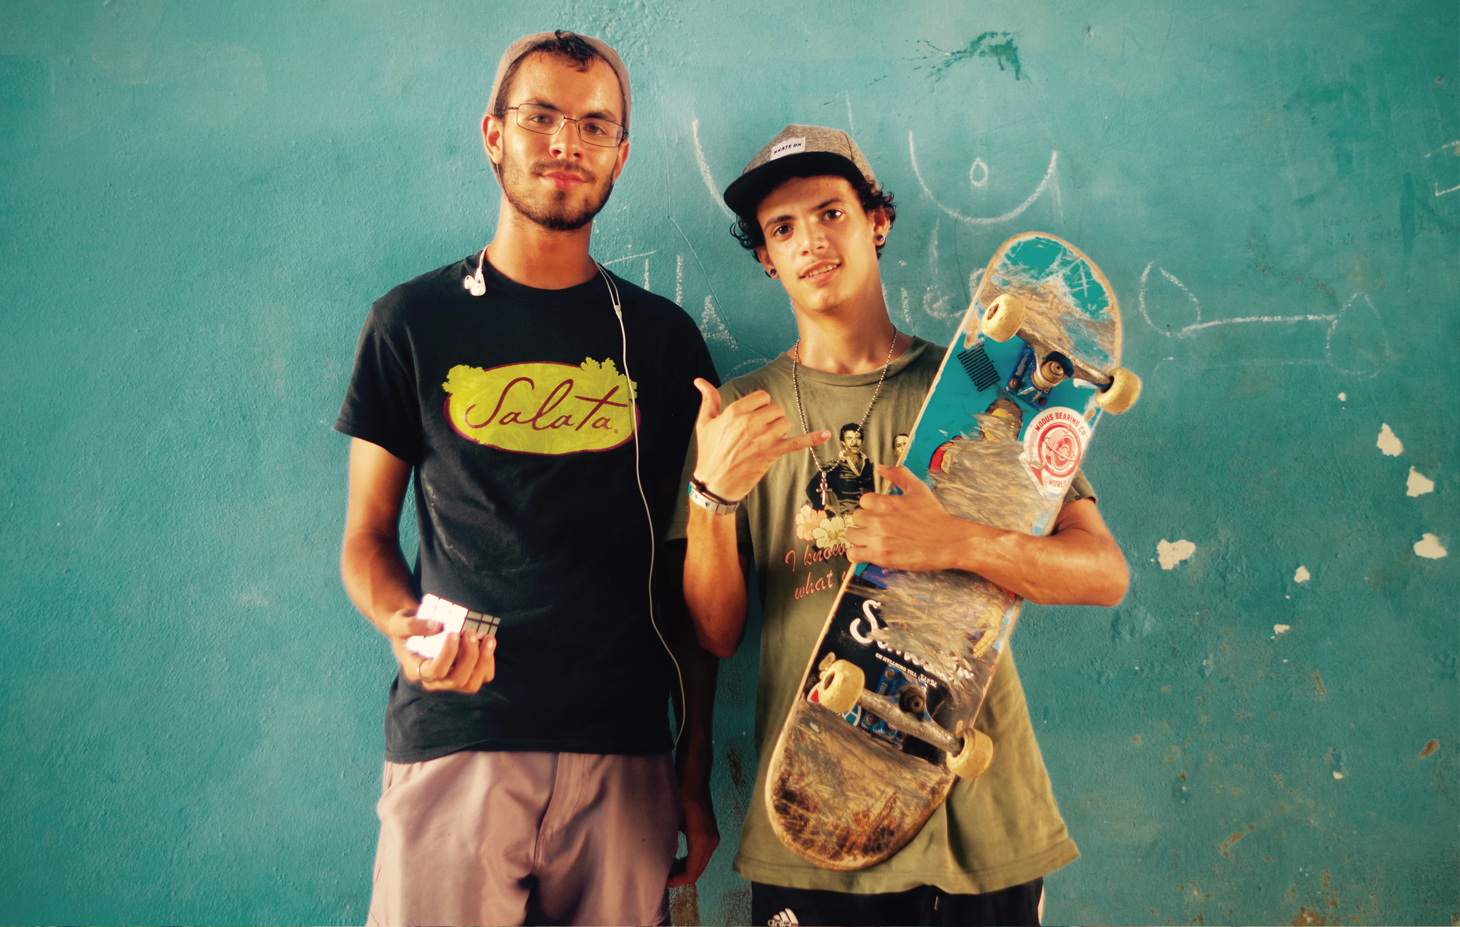 Skateboarders in Cuba